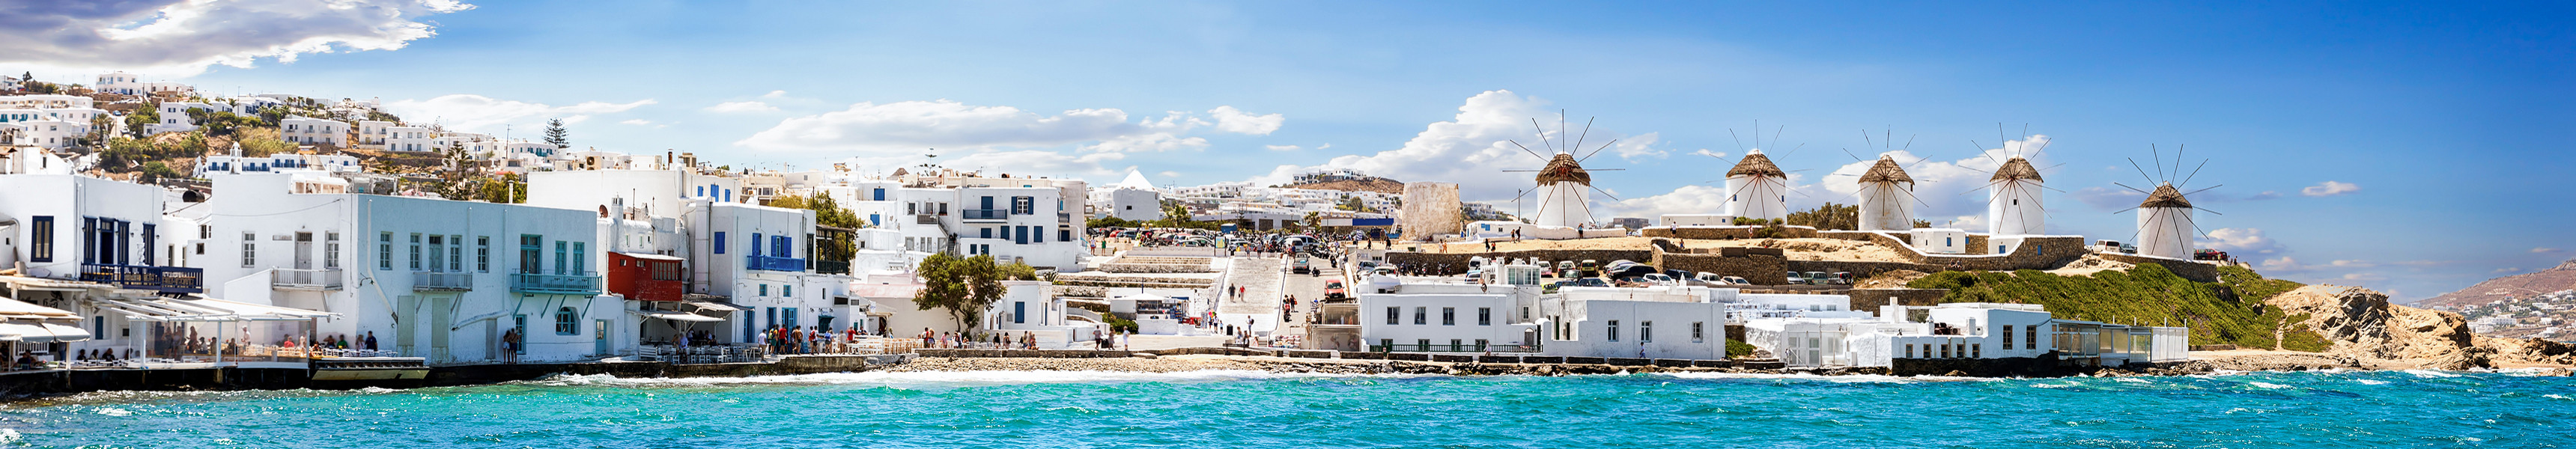 Reif für die griechische Insel – nur für welche?